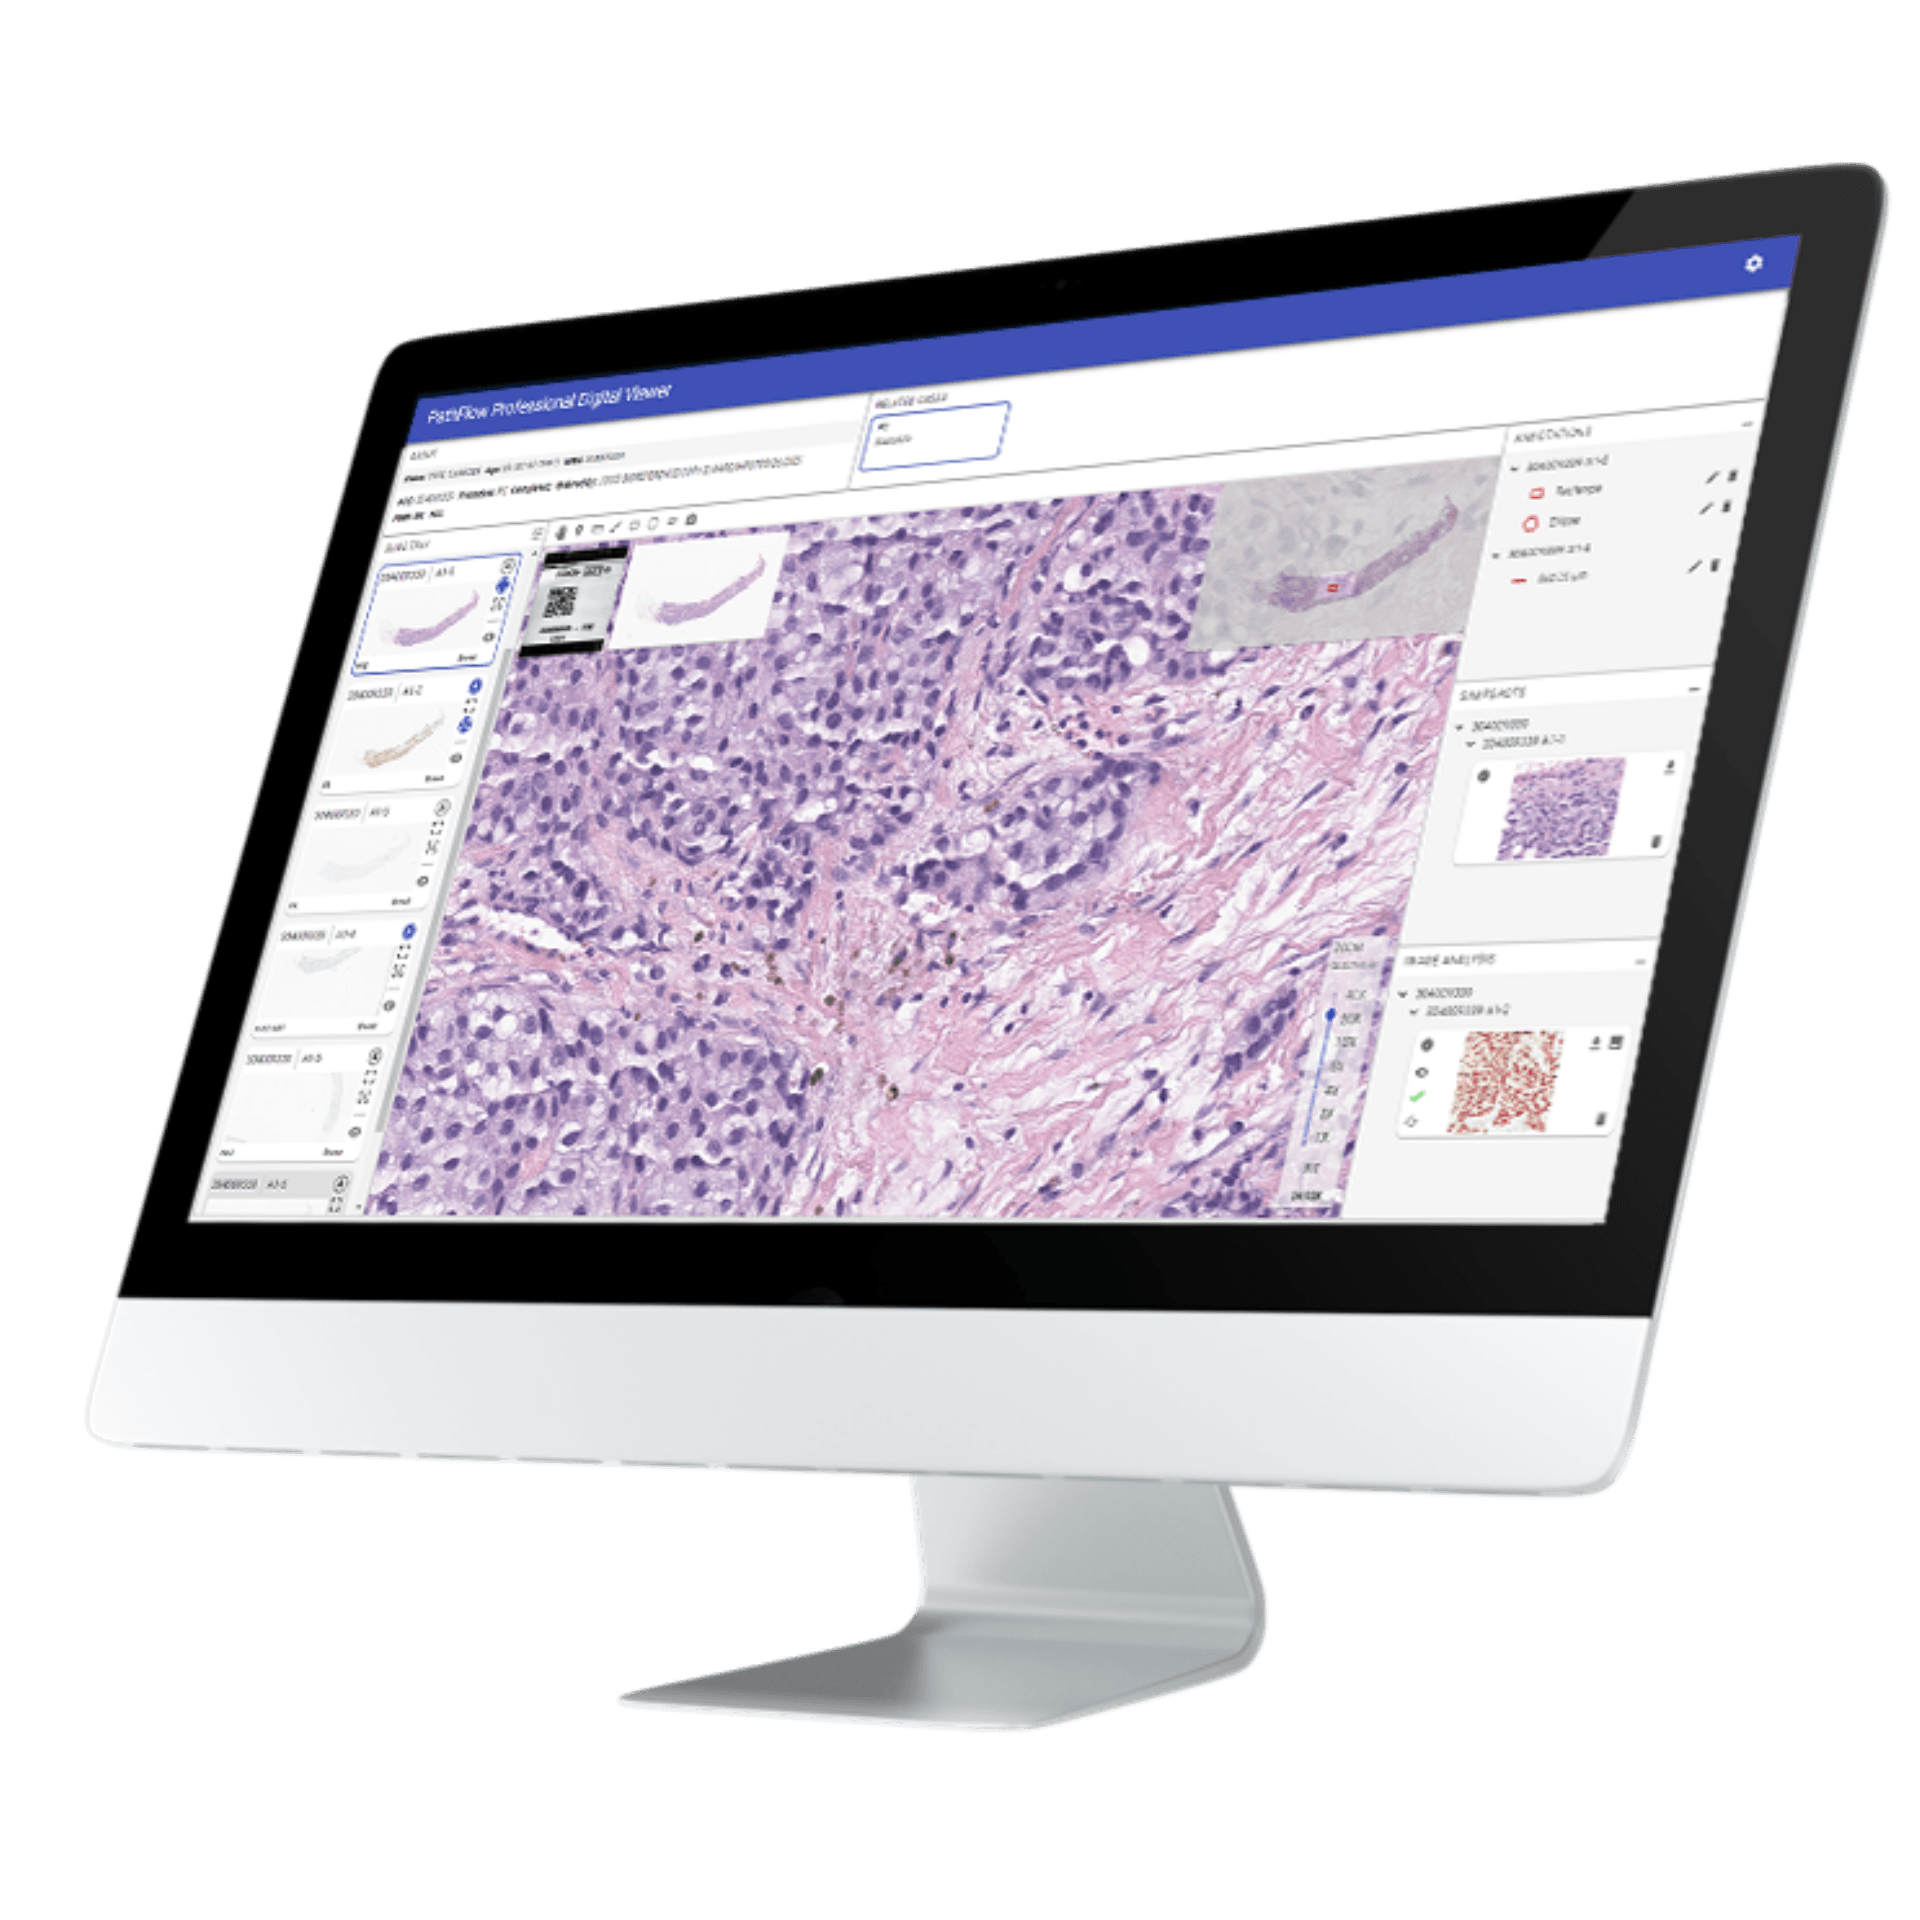 Digital Pathology Workflow